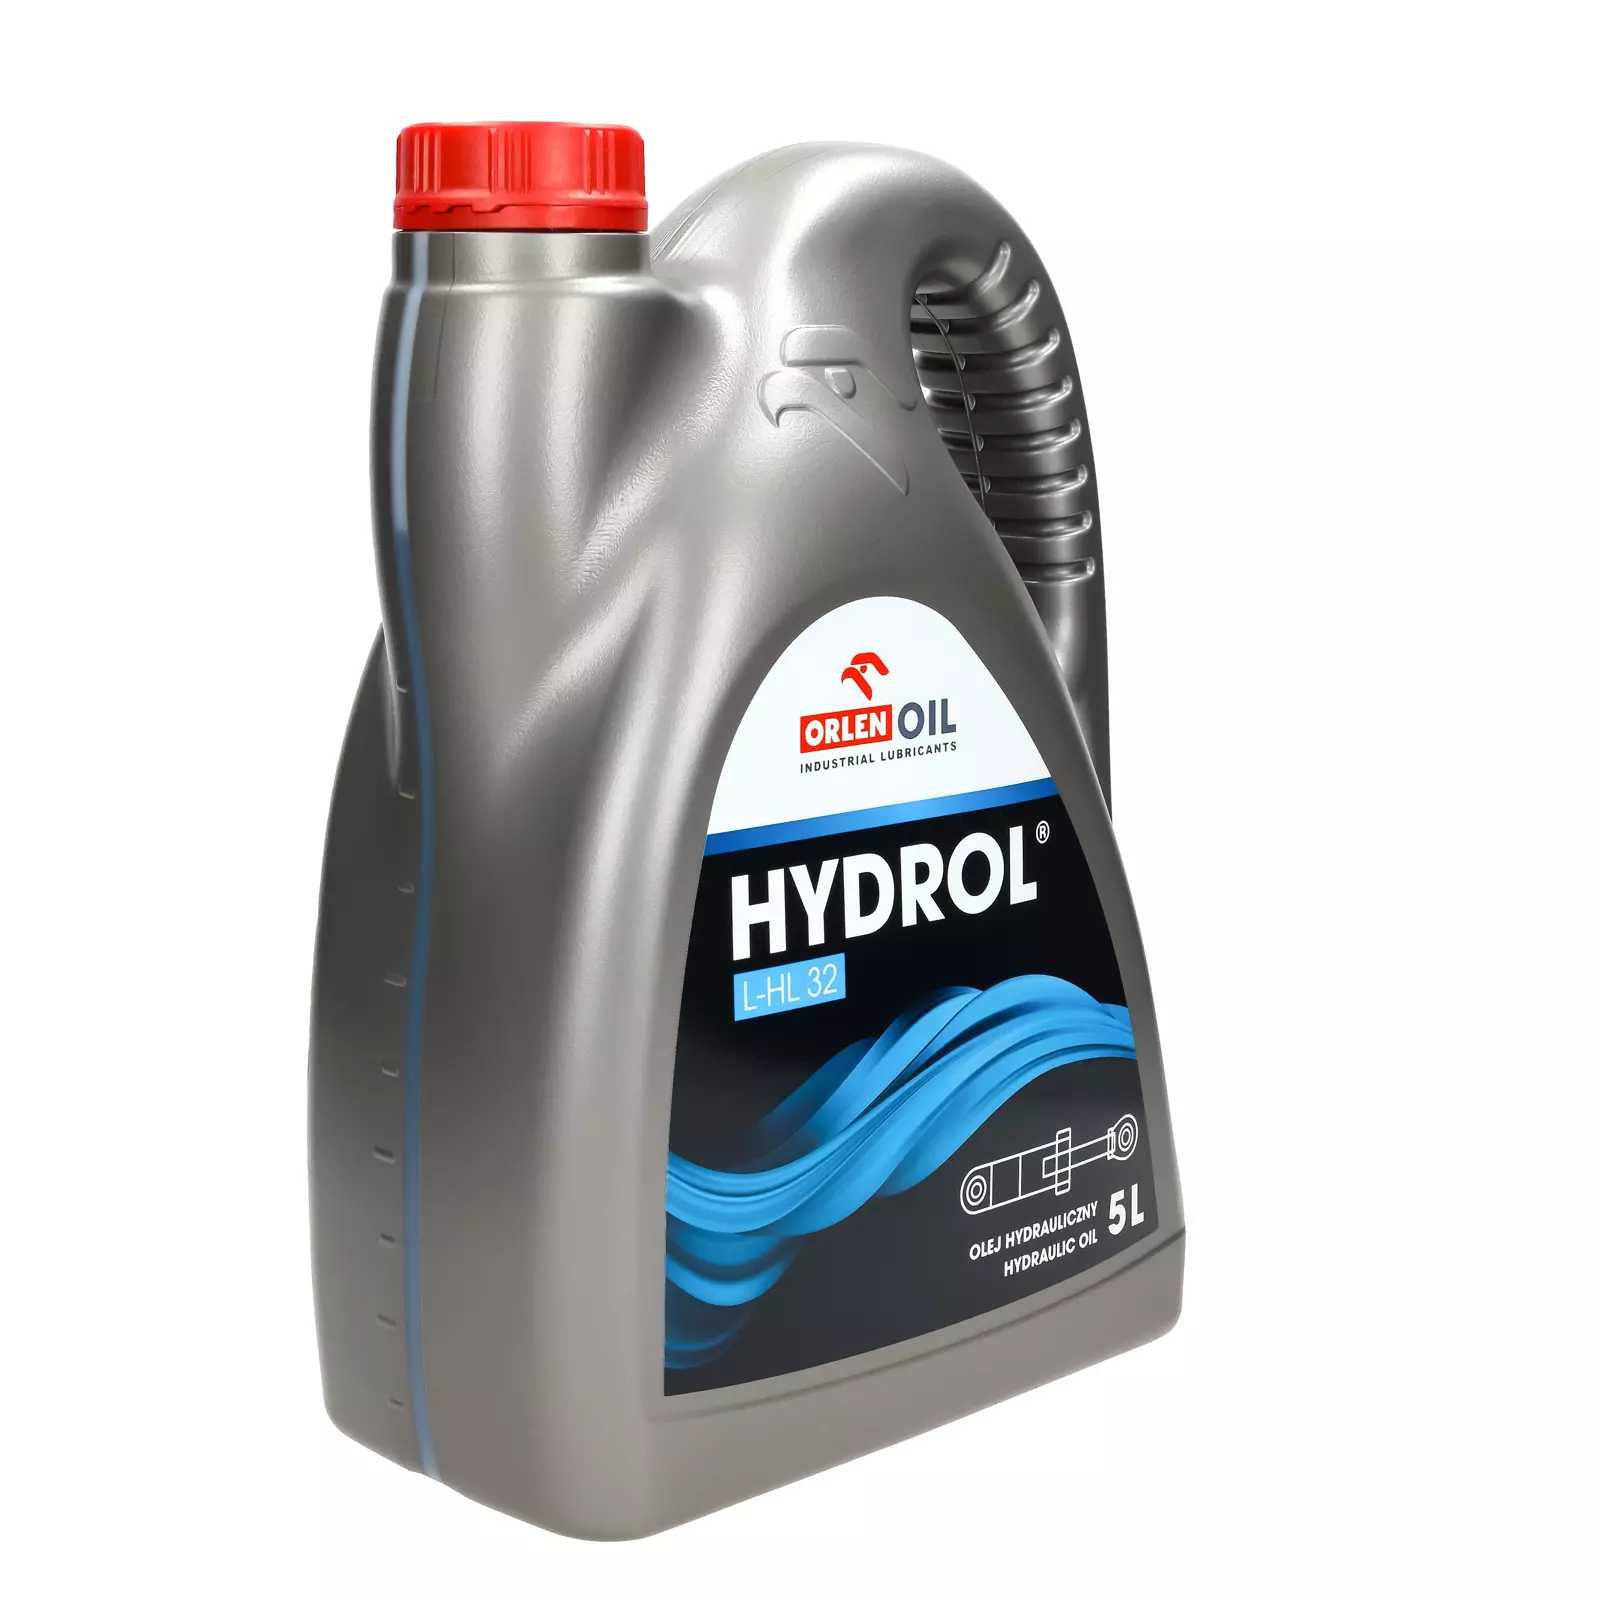 Гидравлическое масло Orlen HYDROL L-HL 32 5л.